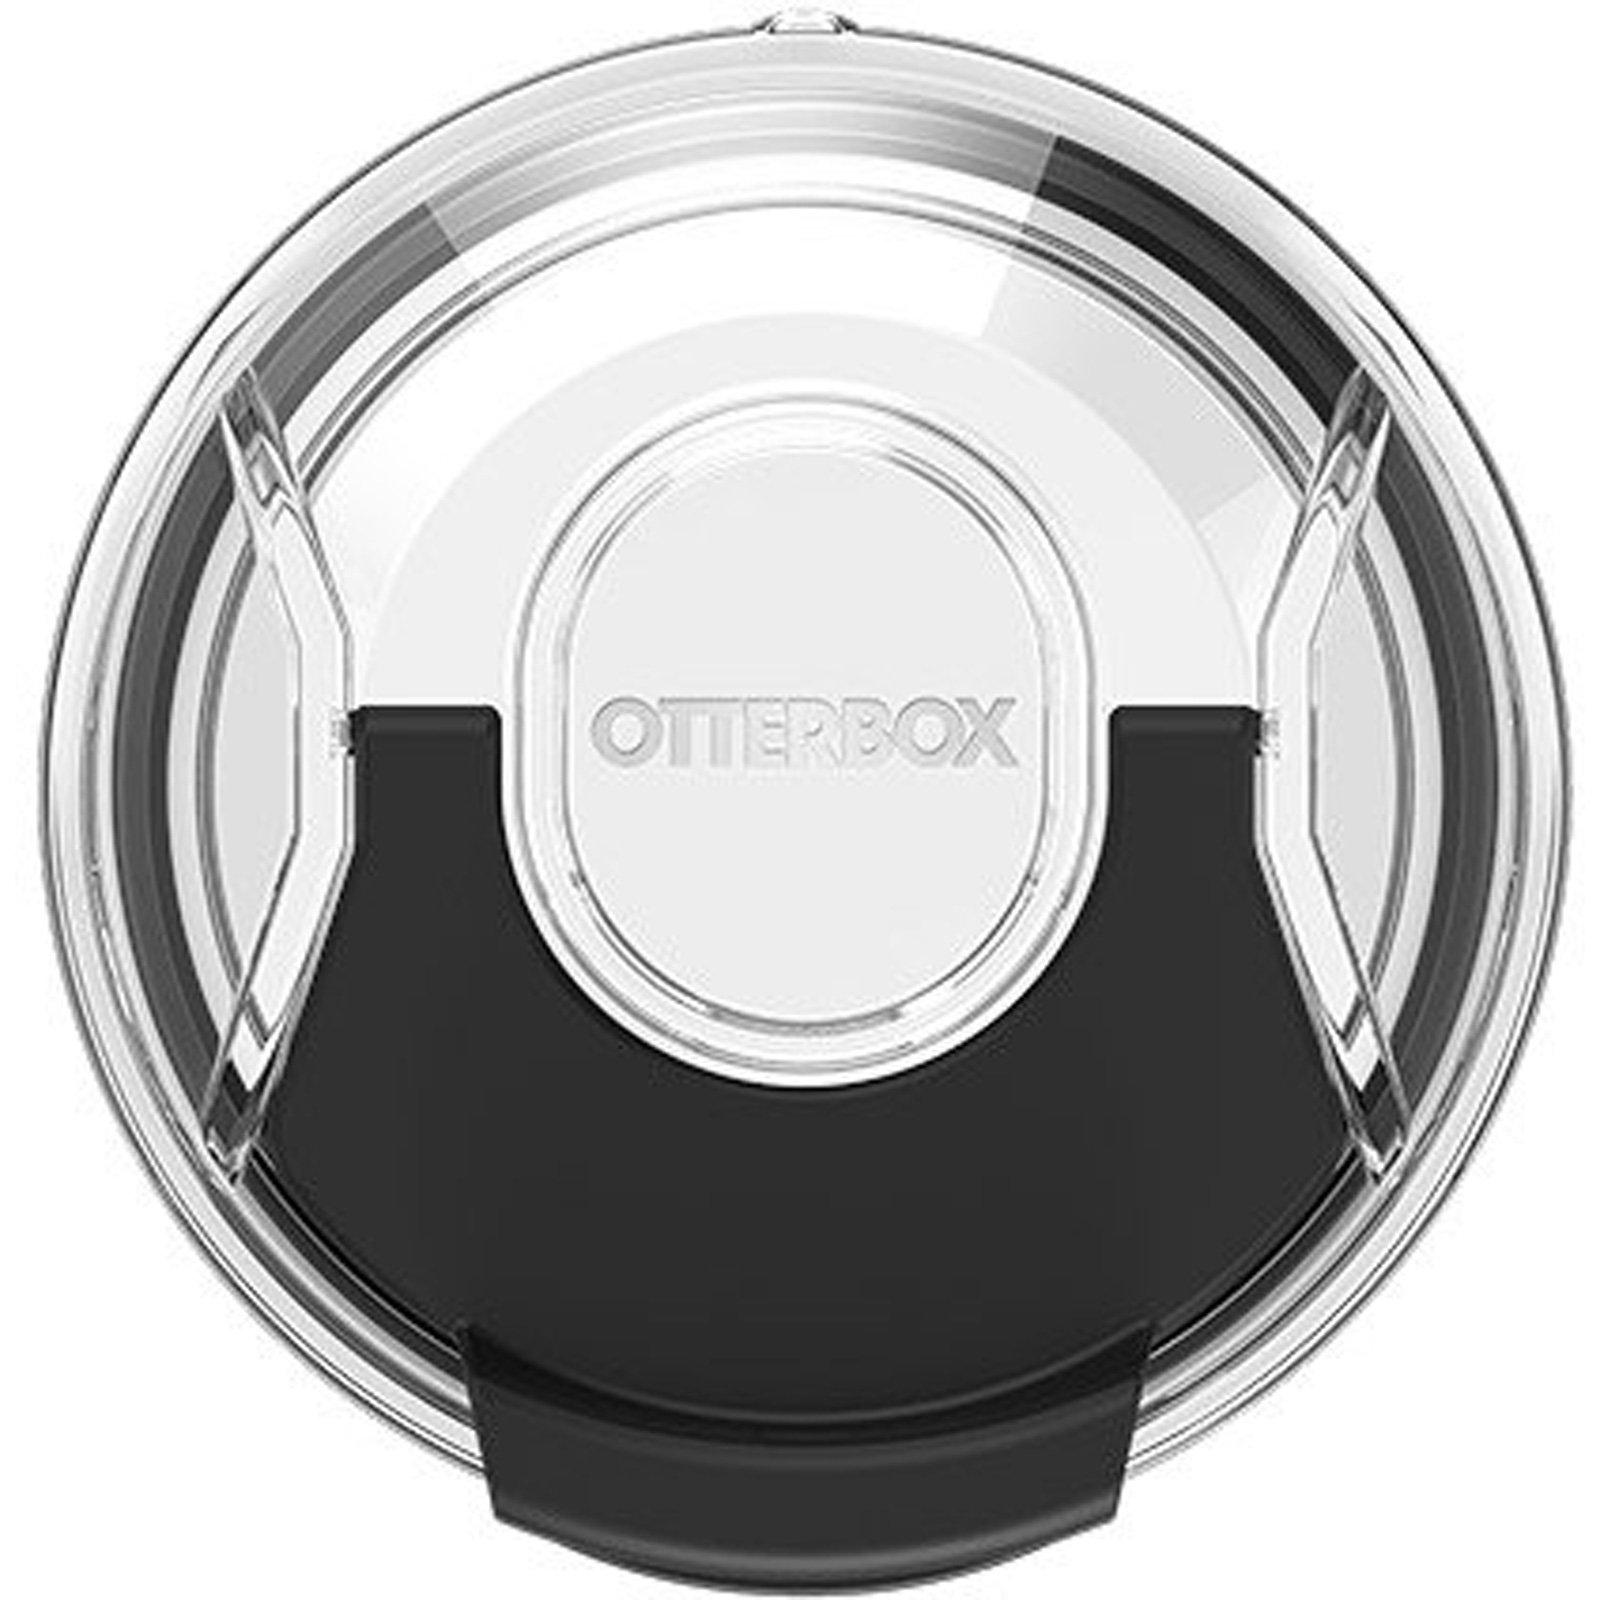 https://www.otterbox.com/on/demandware.static/-/Sites-masterCatalog/default/dw9f4d7385/productimages/dis/outdoor/otr57-tumbler-20/otr57-tumbler-20-4714-5.jpg